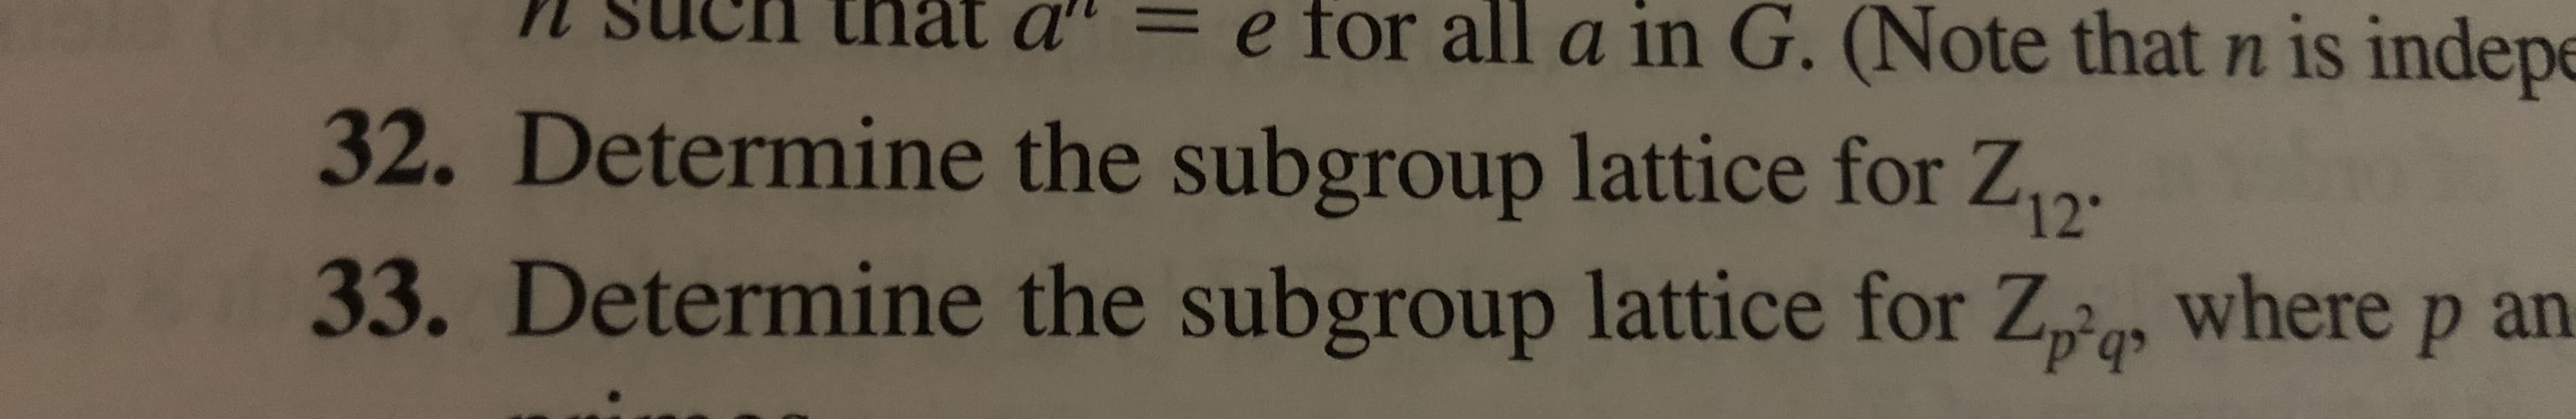 e for all a in G. (Note that n is indep
tnat a
32. Determine the subgroup lattice for Z
33. Determine the subgroup lattice for Za where p an
